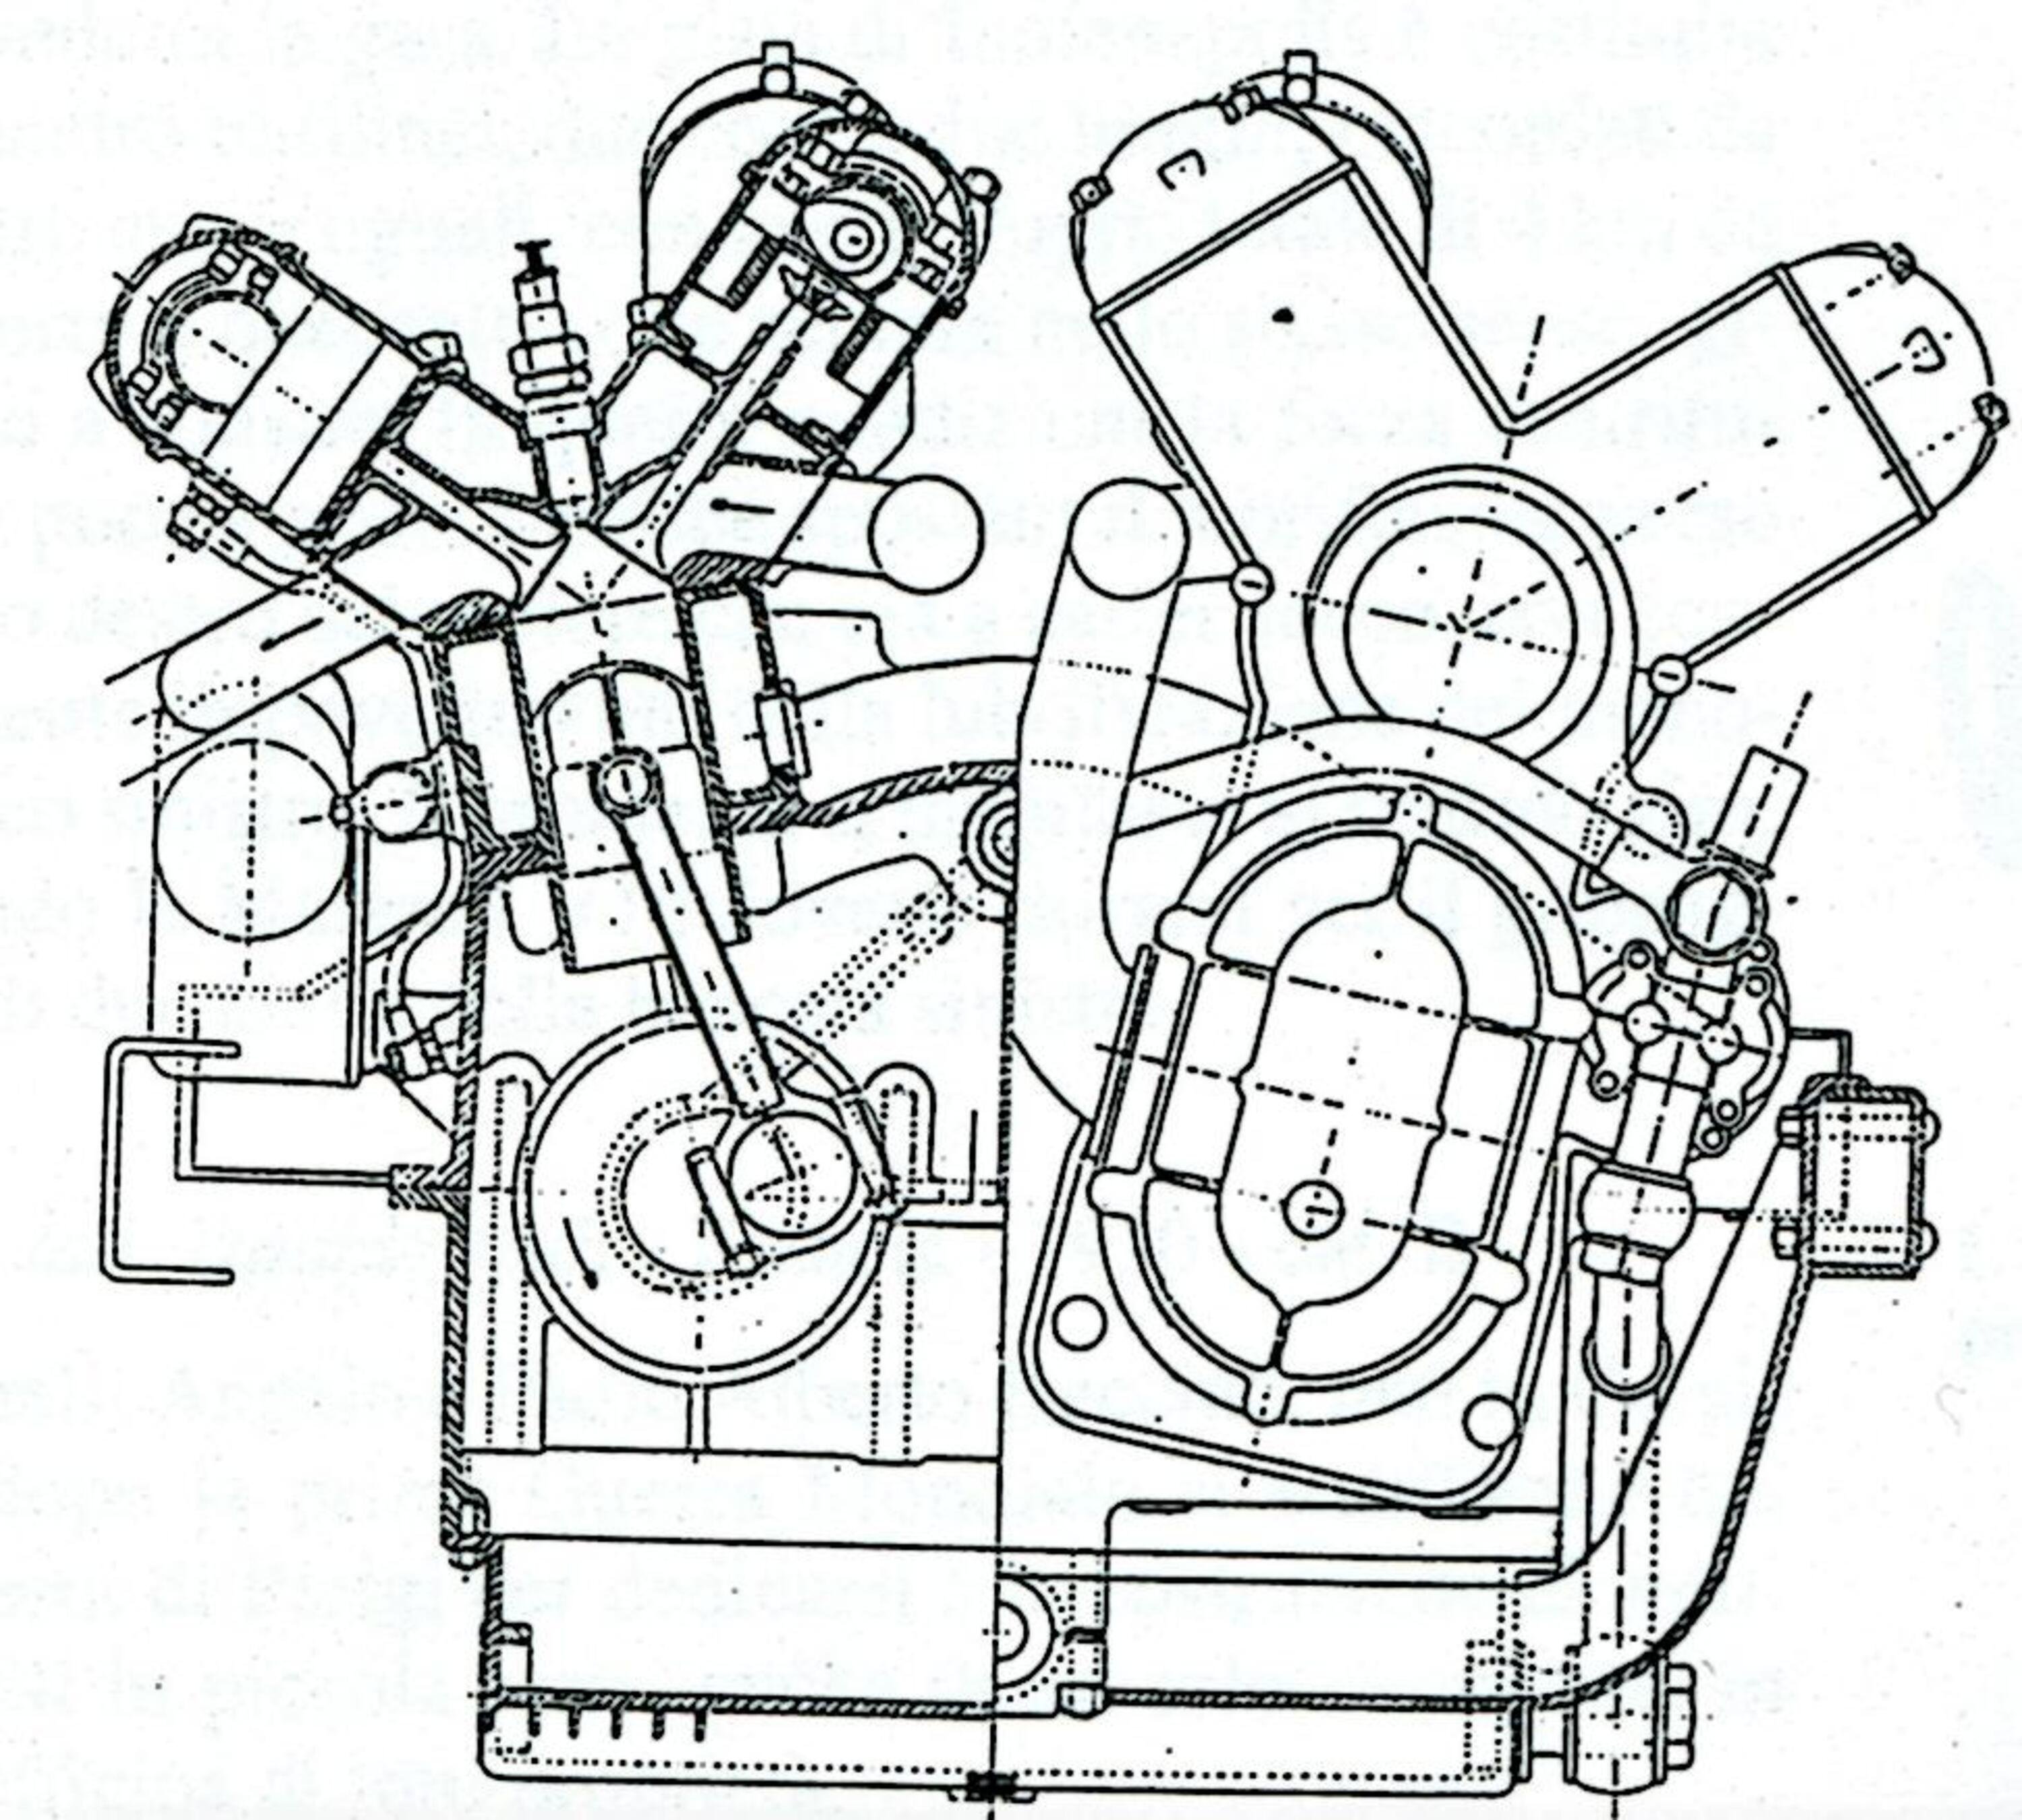 Tecnica: i motori a sedici cilindri